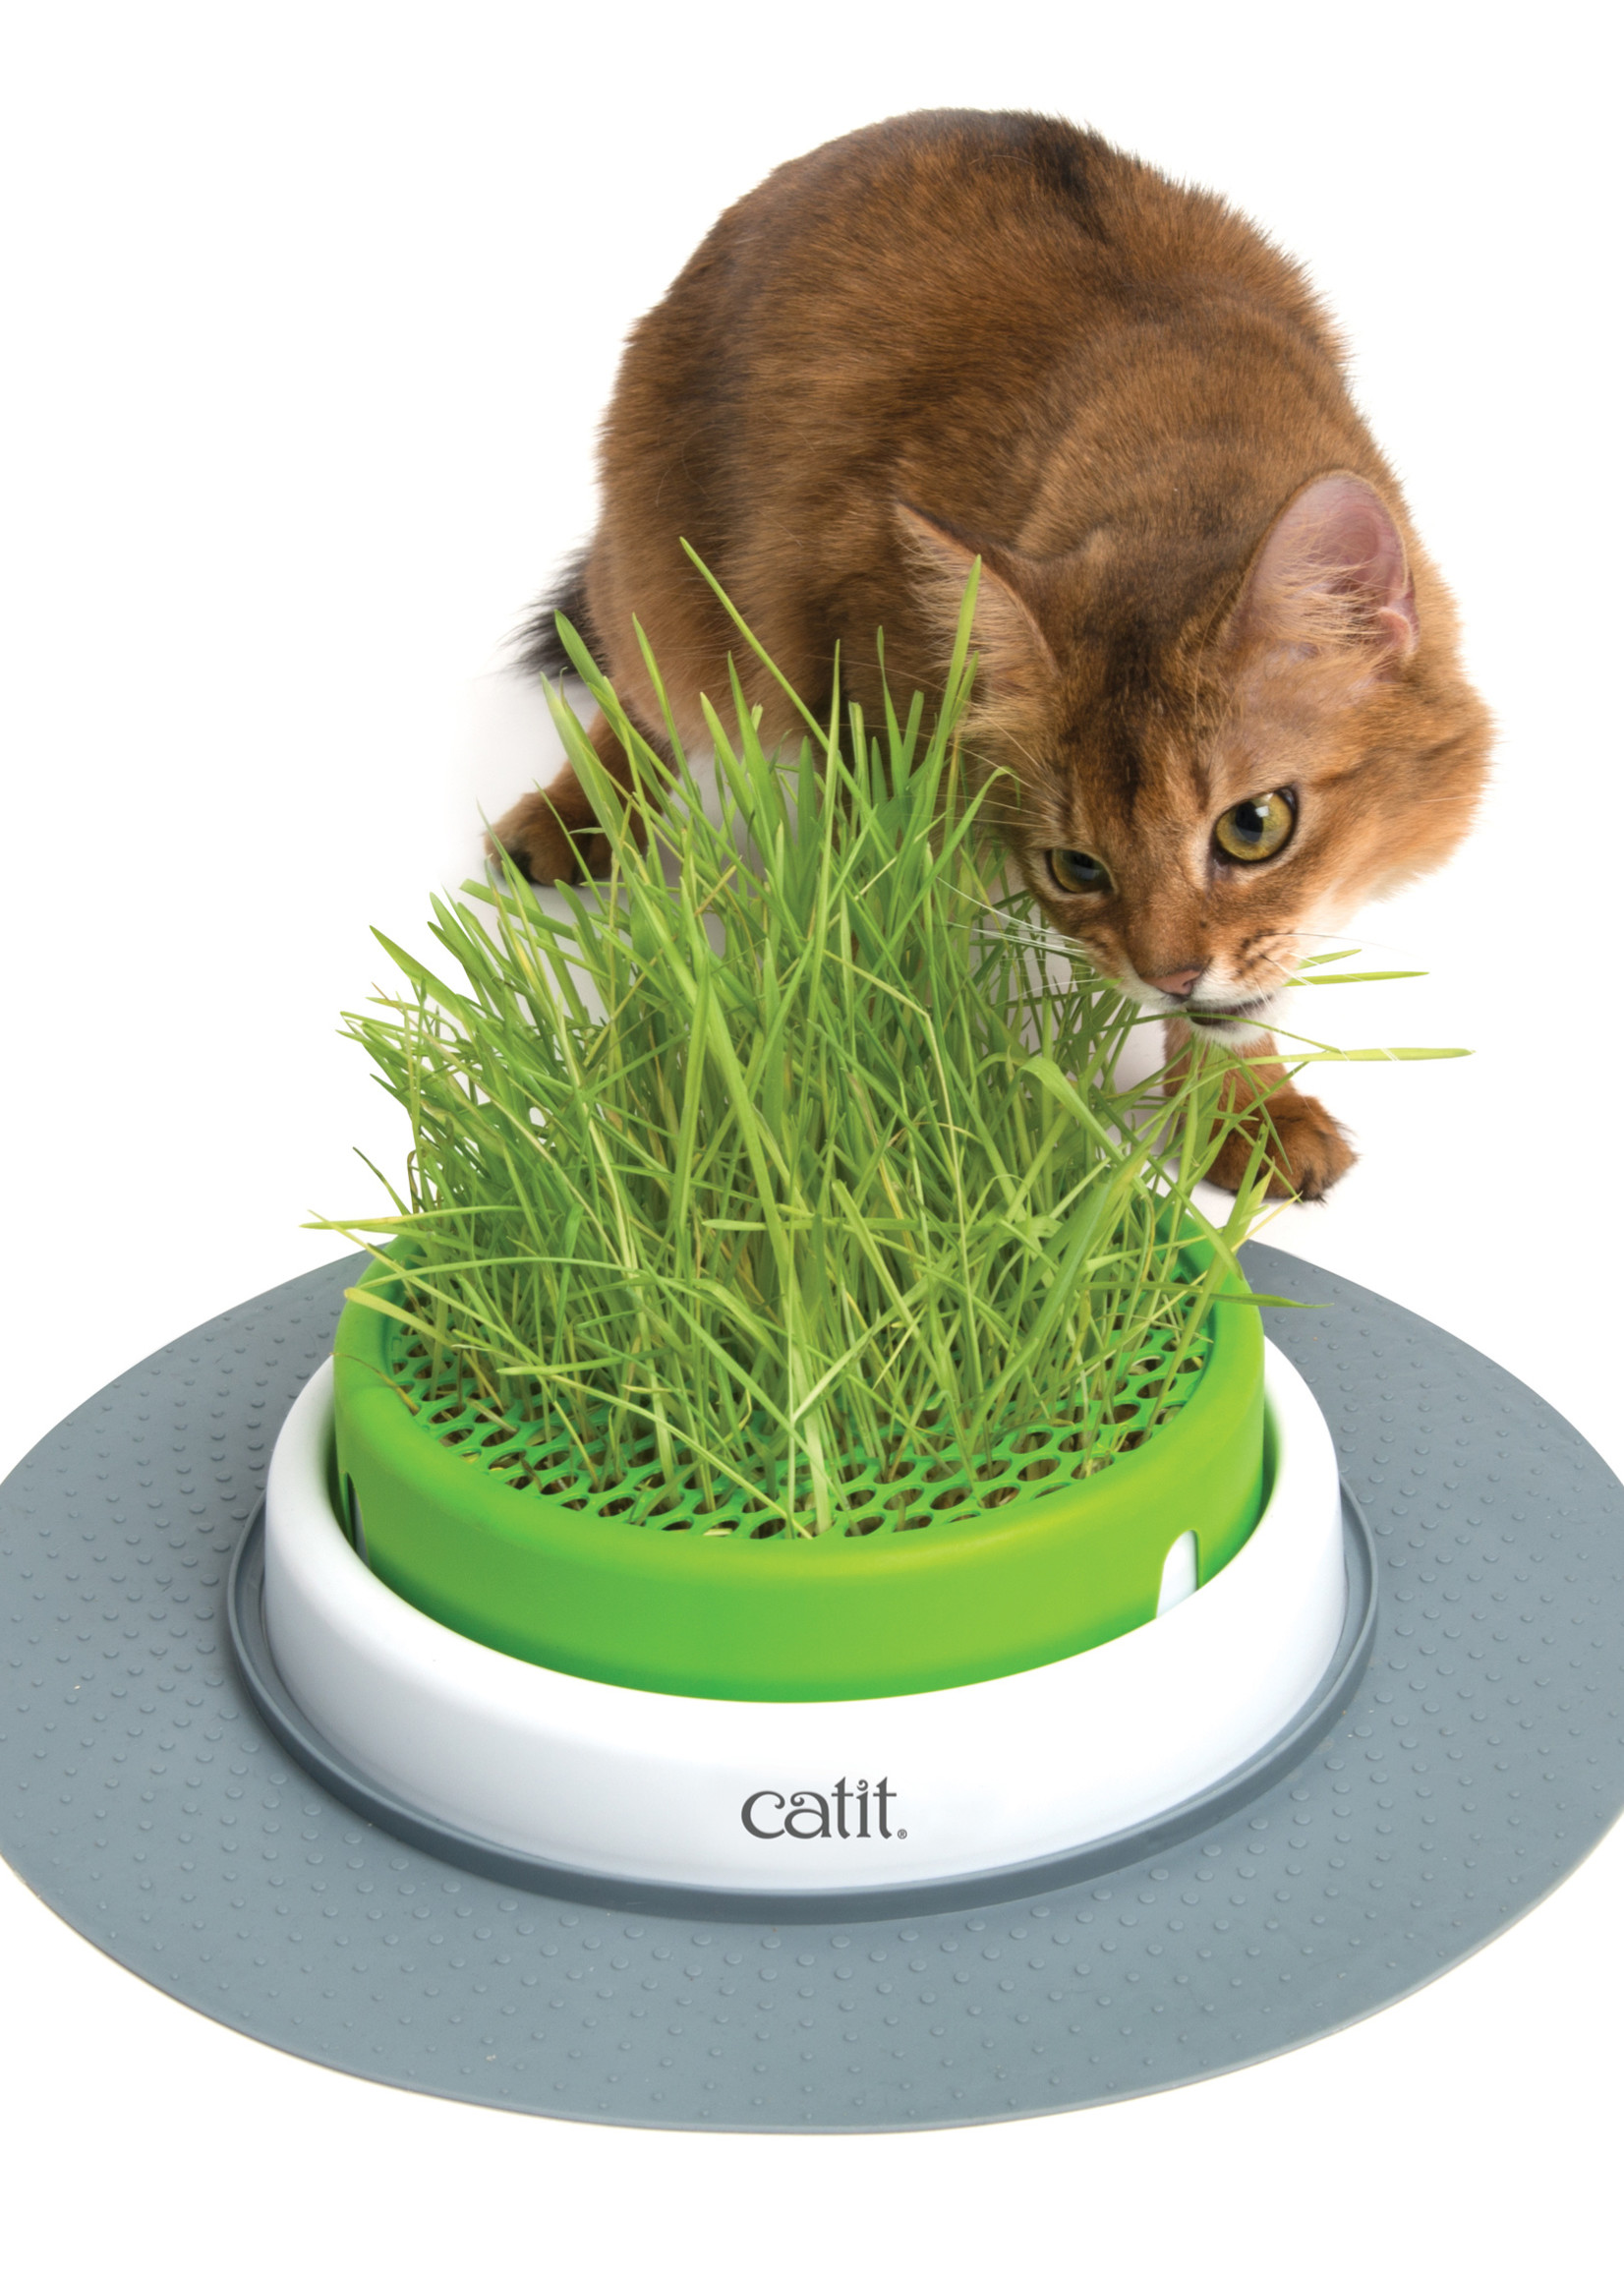 Catit® Catiti® Senses 2.0 Grass Planter